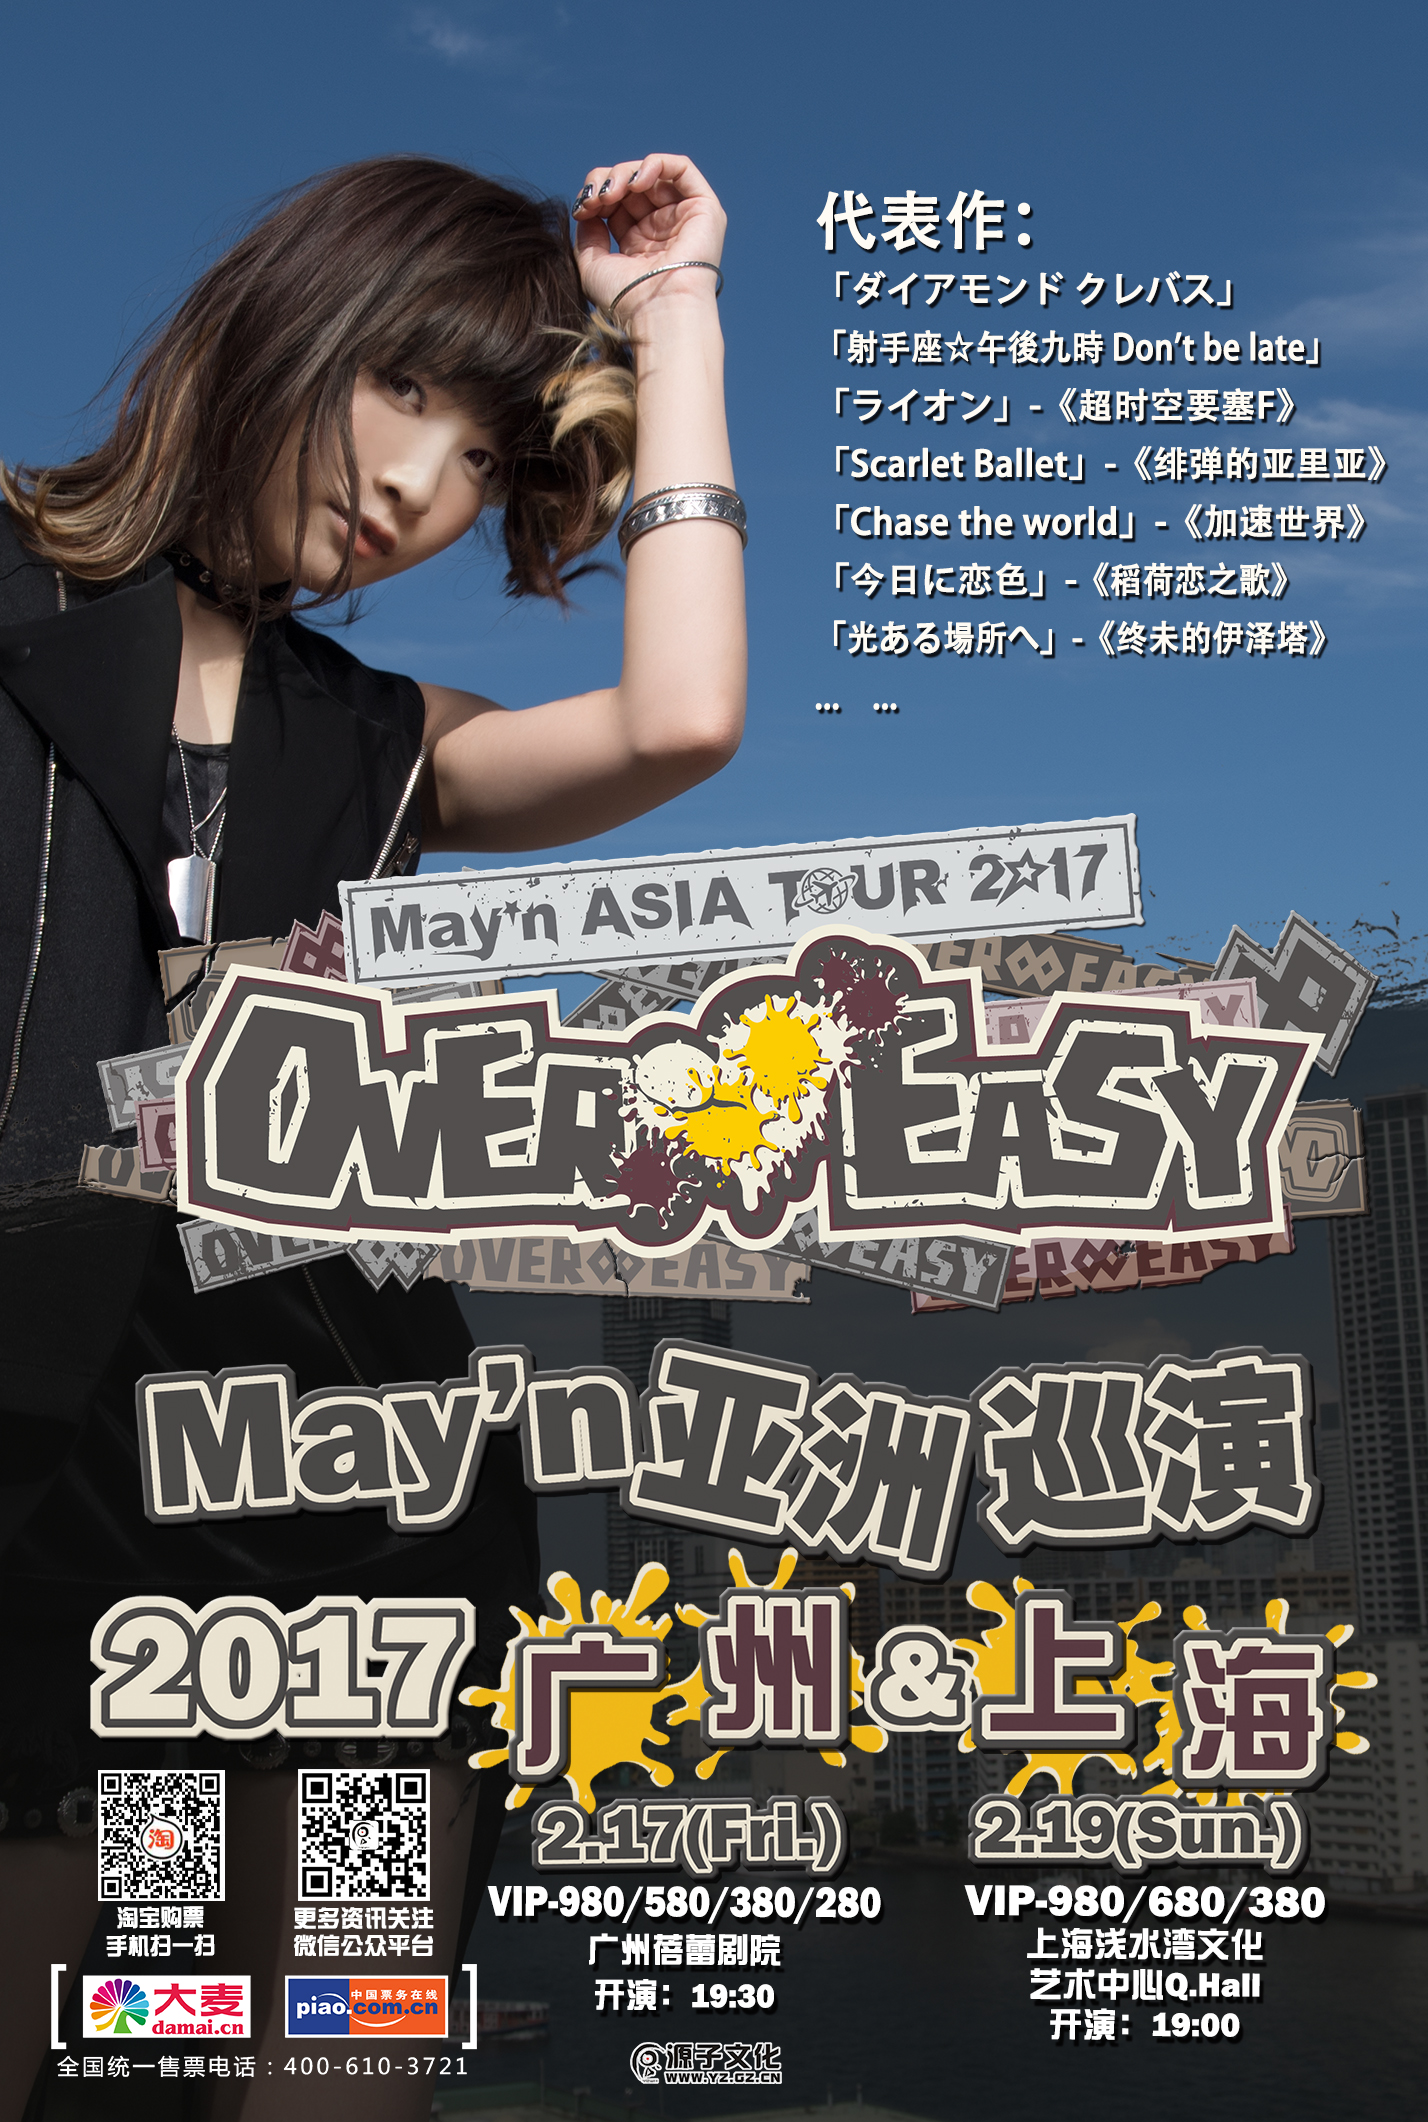 时隔两年 再次相约 May N Asia Tour 17 Over Easy 广州 海站不容错 业内动态 Ac模玩网